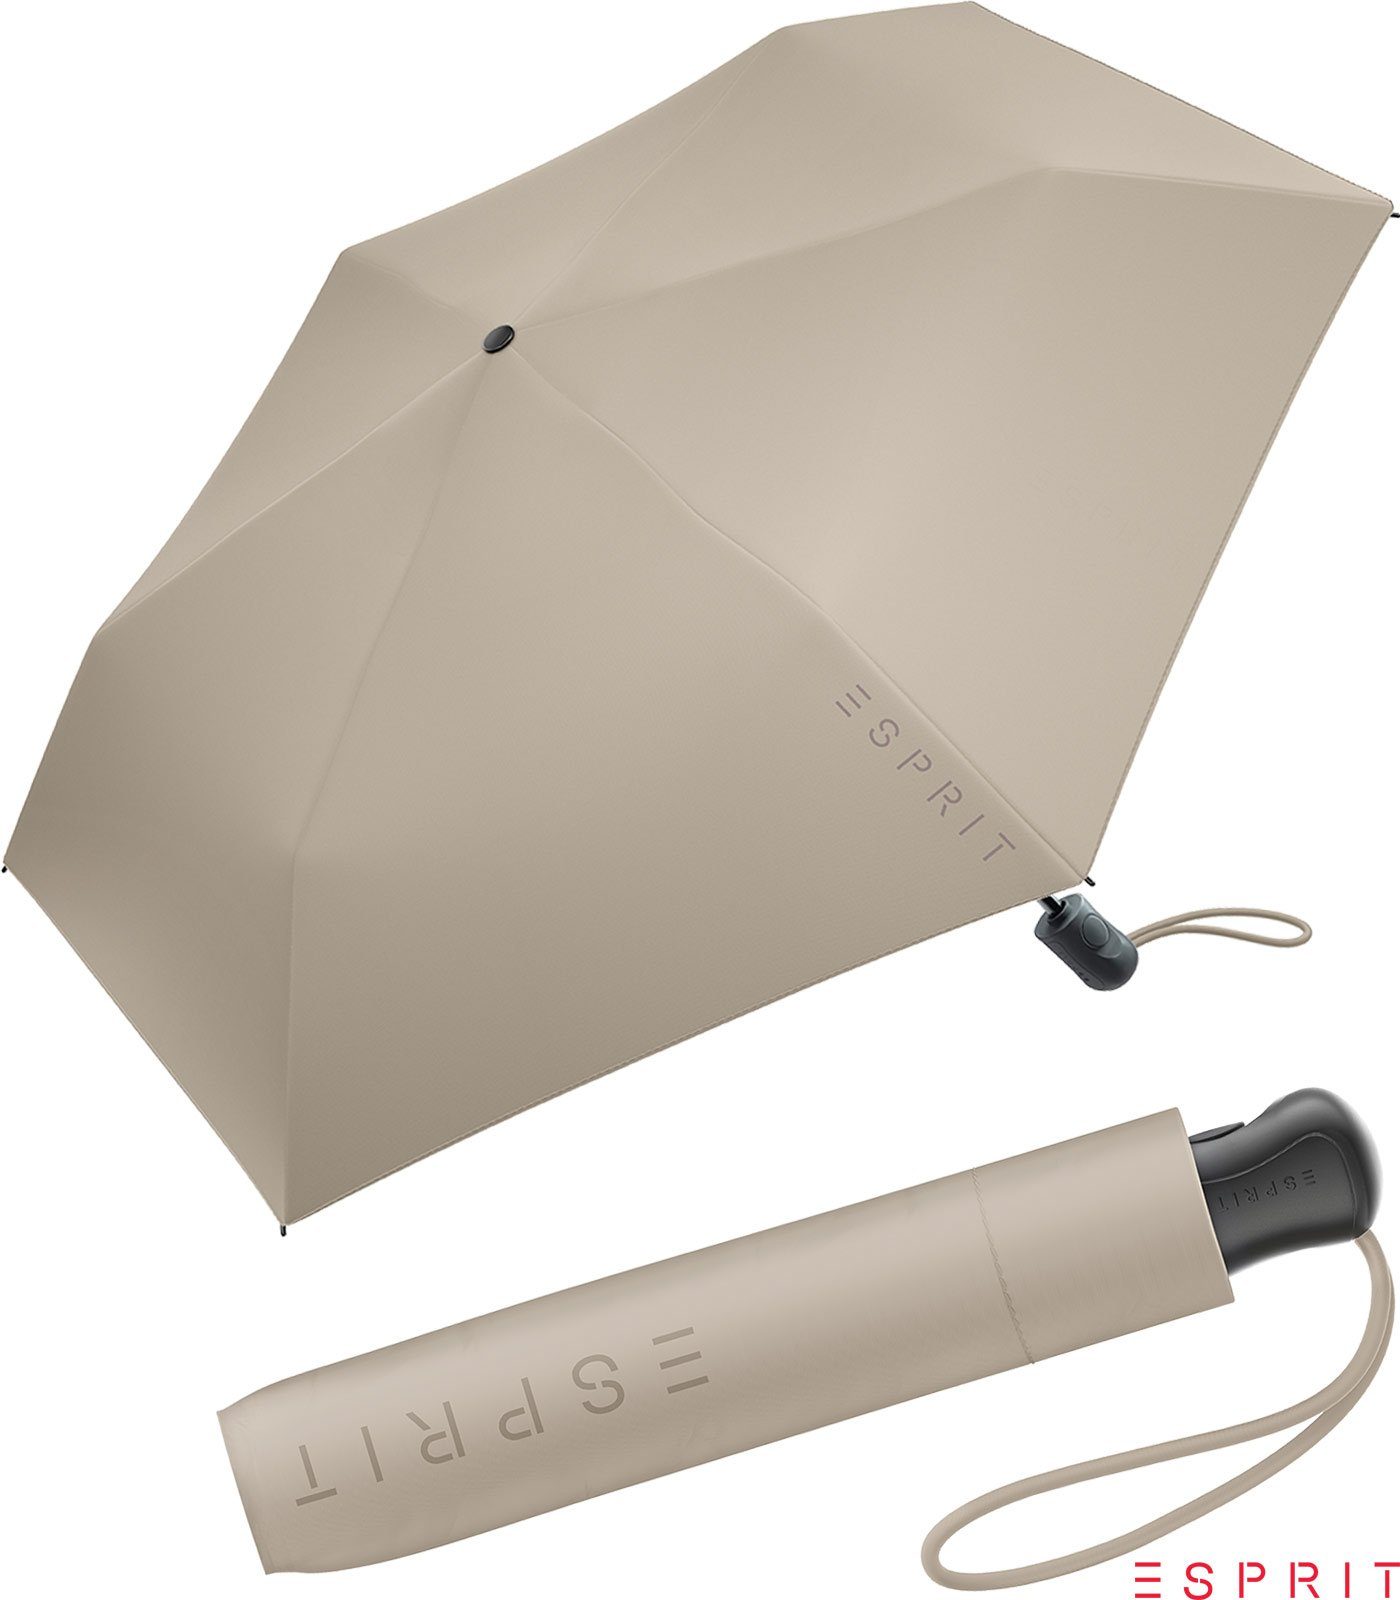 Esprit Taschenregenschirm Damen Easymatic Slimline Auf-Zu Automatik HW 2022 - taupe gray, leicht, stabil, in den neuen Trendfarben grau